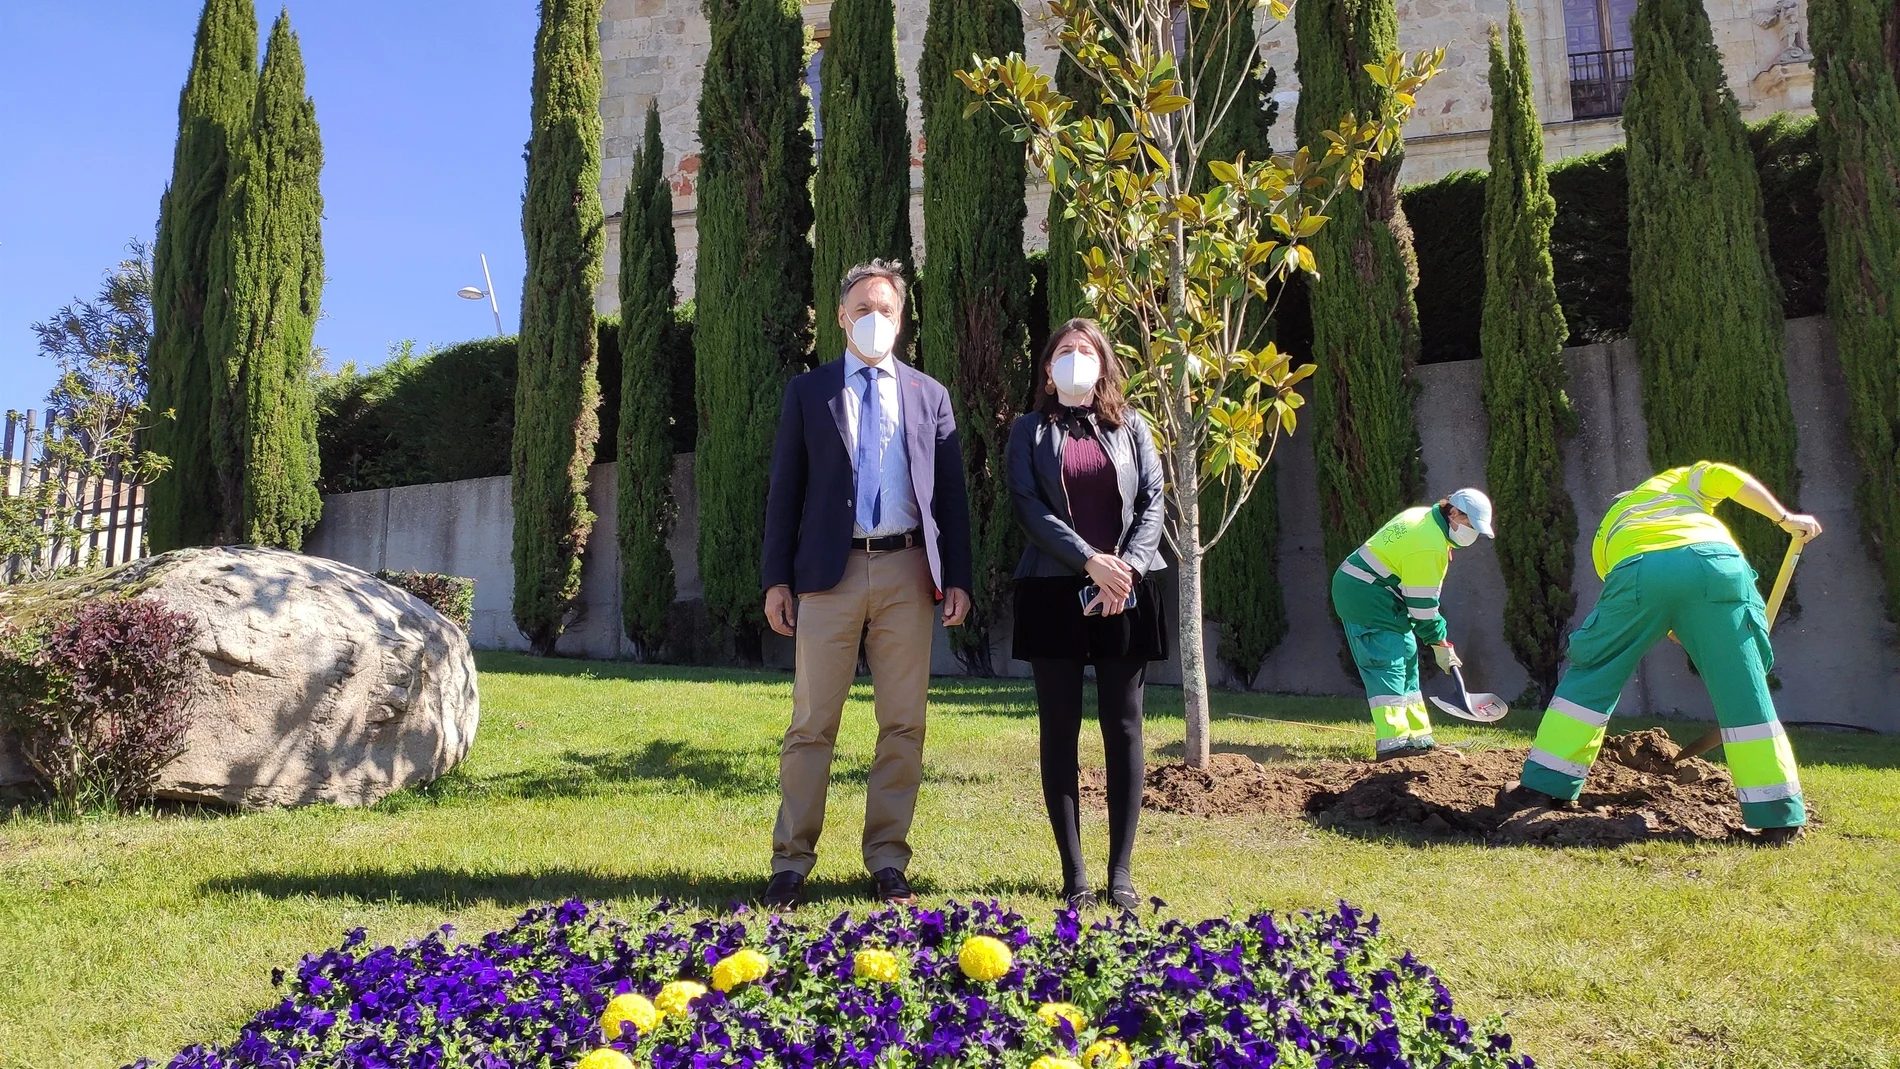 El alcalde de la ciudad, Carlos García Carbayo, y la concejal de Medio Ambiente, Myriam Rodríguez, junto al magnolio de la iniciativa "Un árbol por Europa"